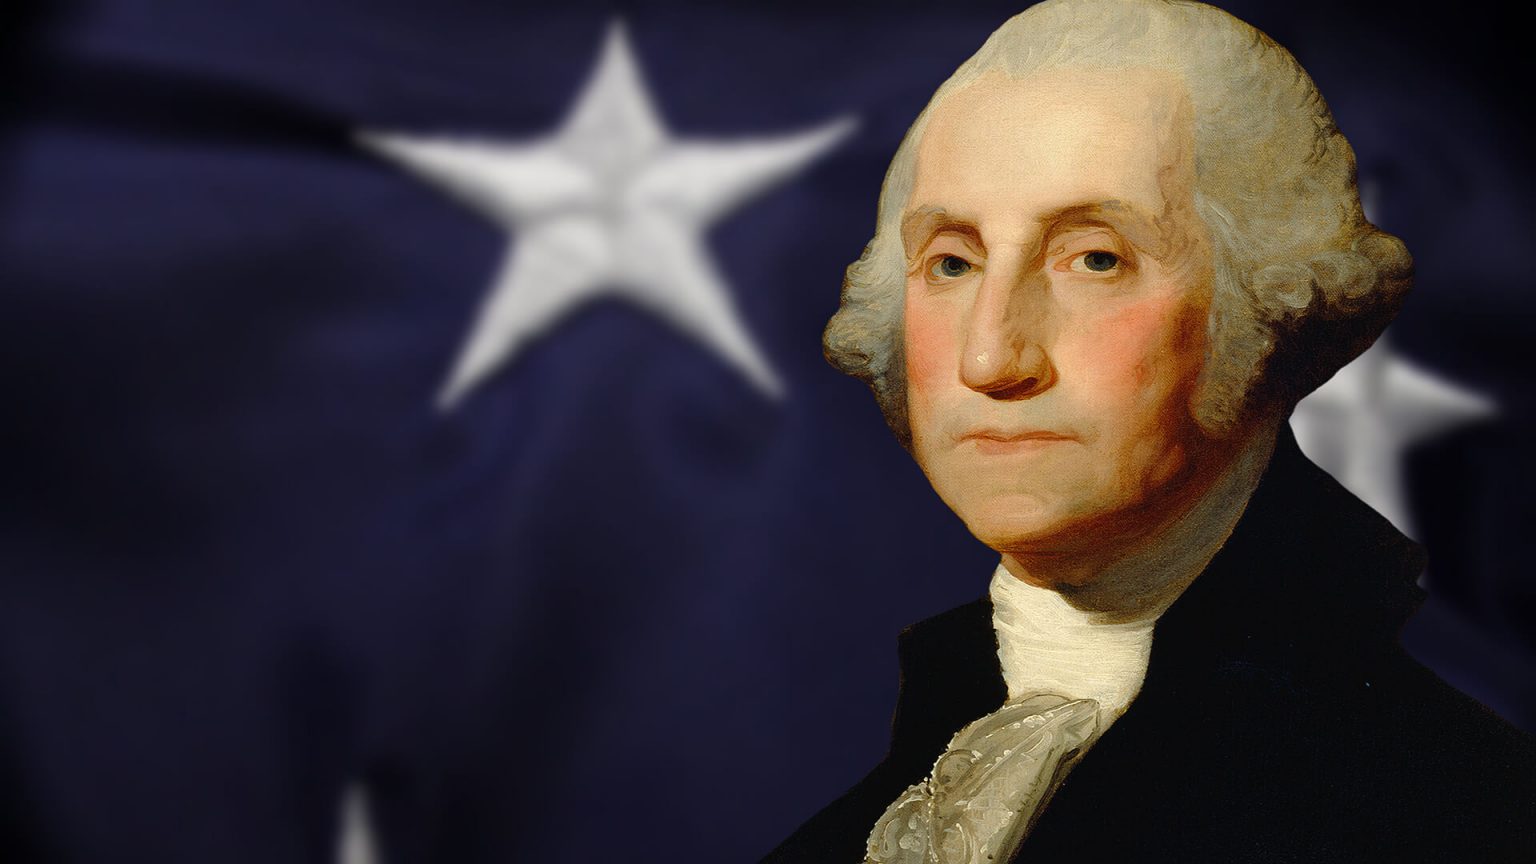 Washington Biografía, historia de vida, carrera y presidencia